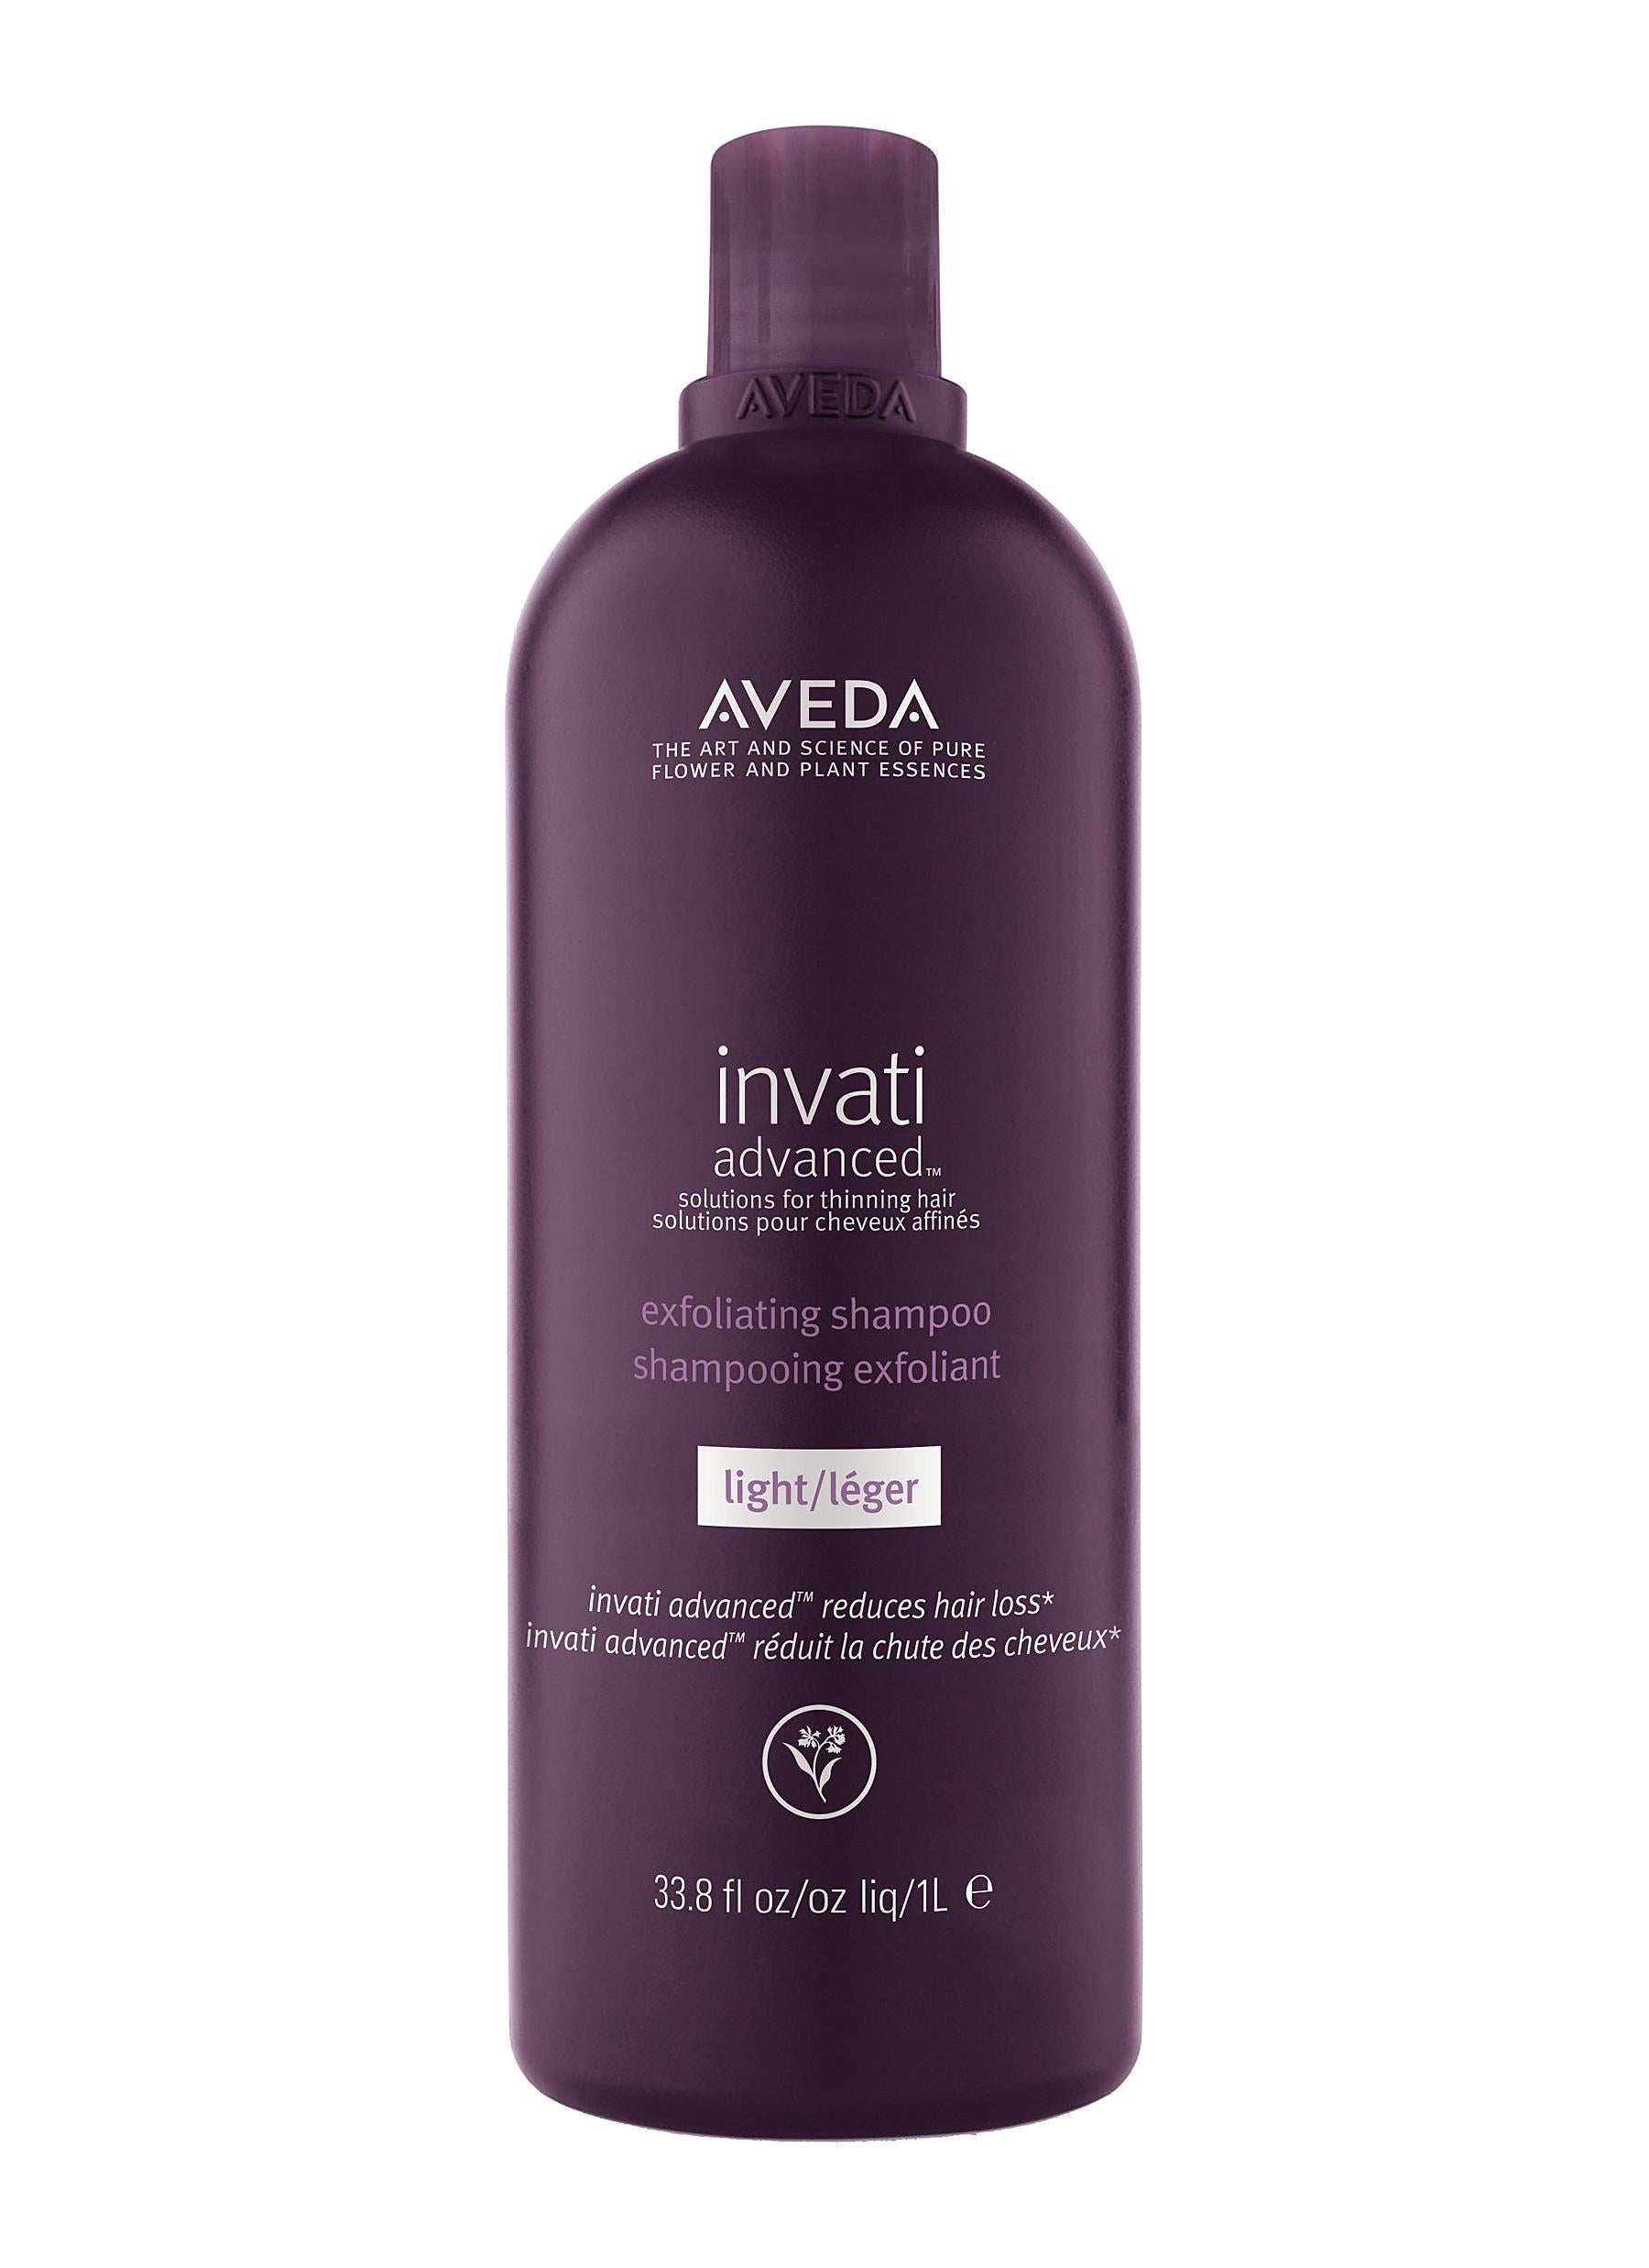 AVEDA Iinvati advanced™ Scalp Purifying Shampoo - Gentle Formula | NVATI ADVANCED™ EXFOLIATING SHAMPOO LIGHT 1000ML